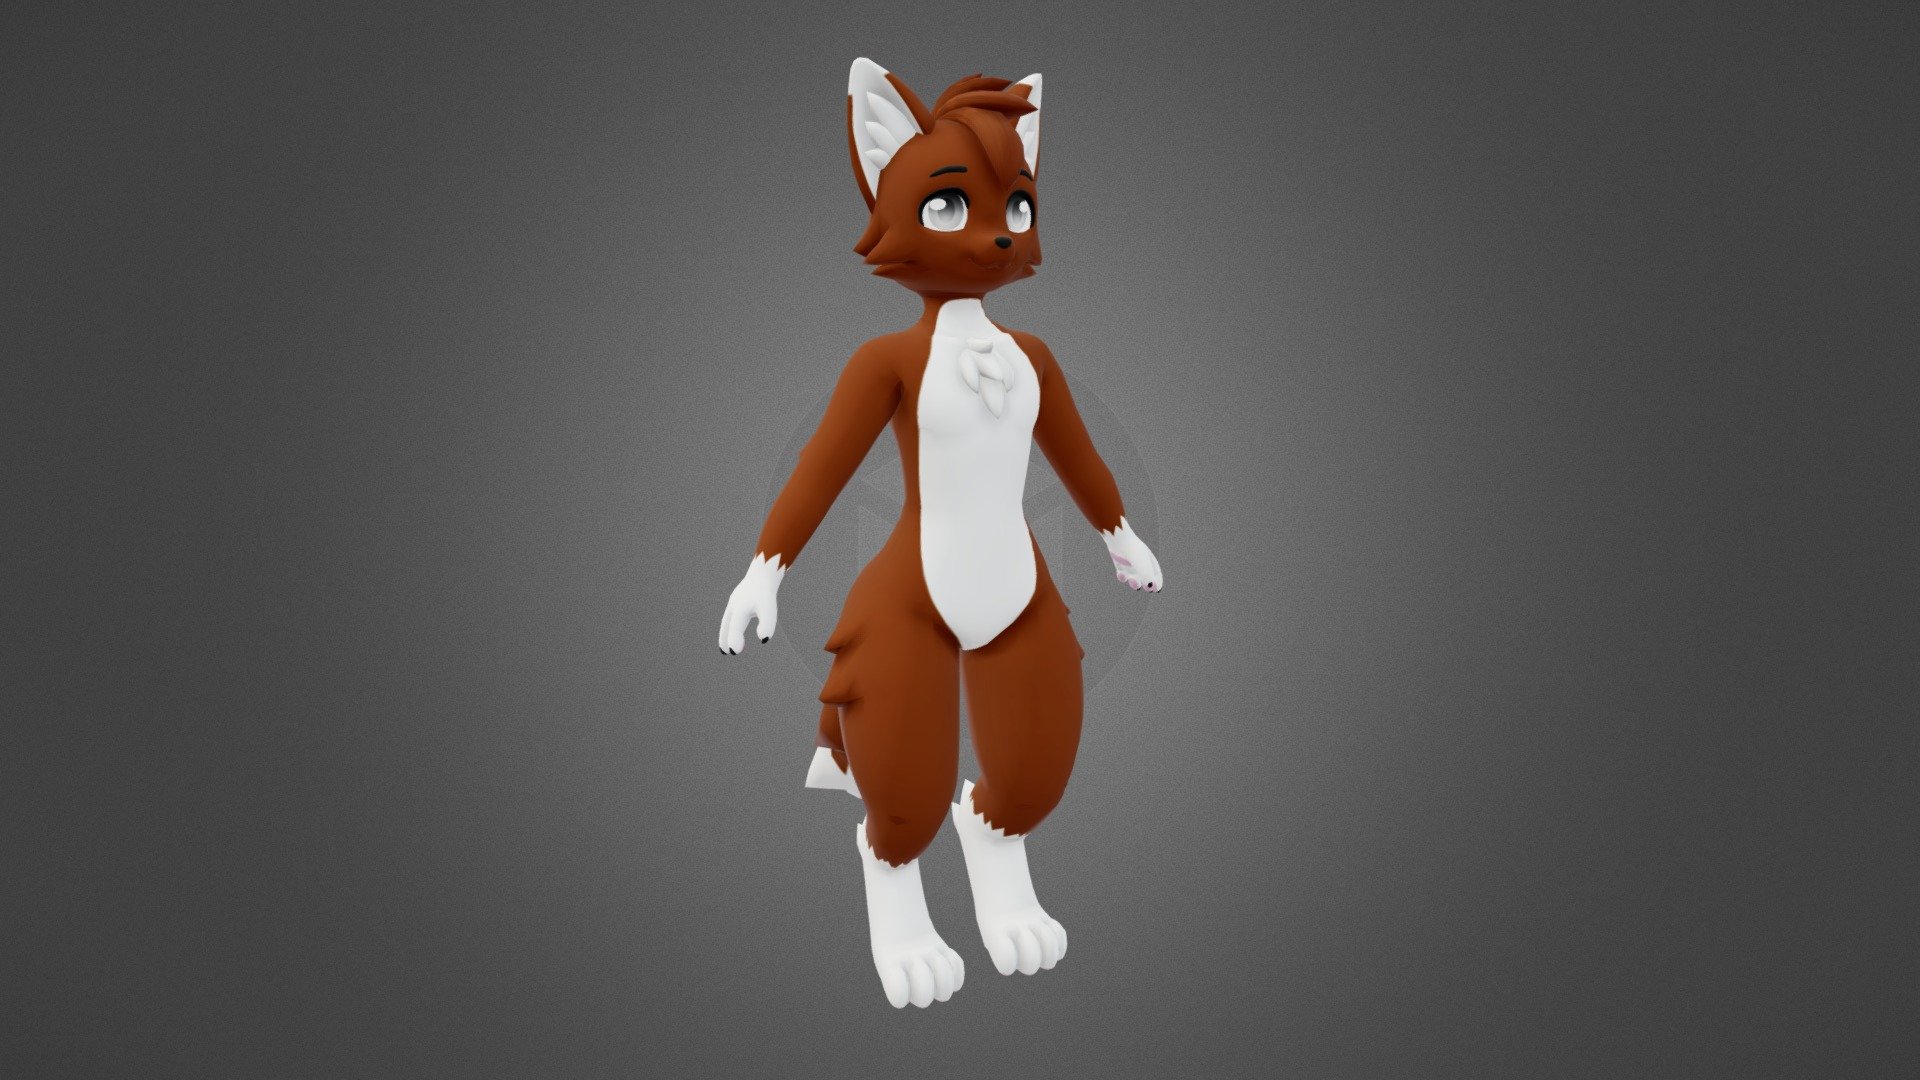 My Twitter: https://twitter.com/GELL3D

Commissions Info: http://gell3d.carrd.co - Cat Furry - 3D model by gell3d 3d model